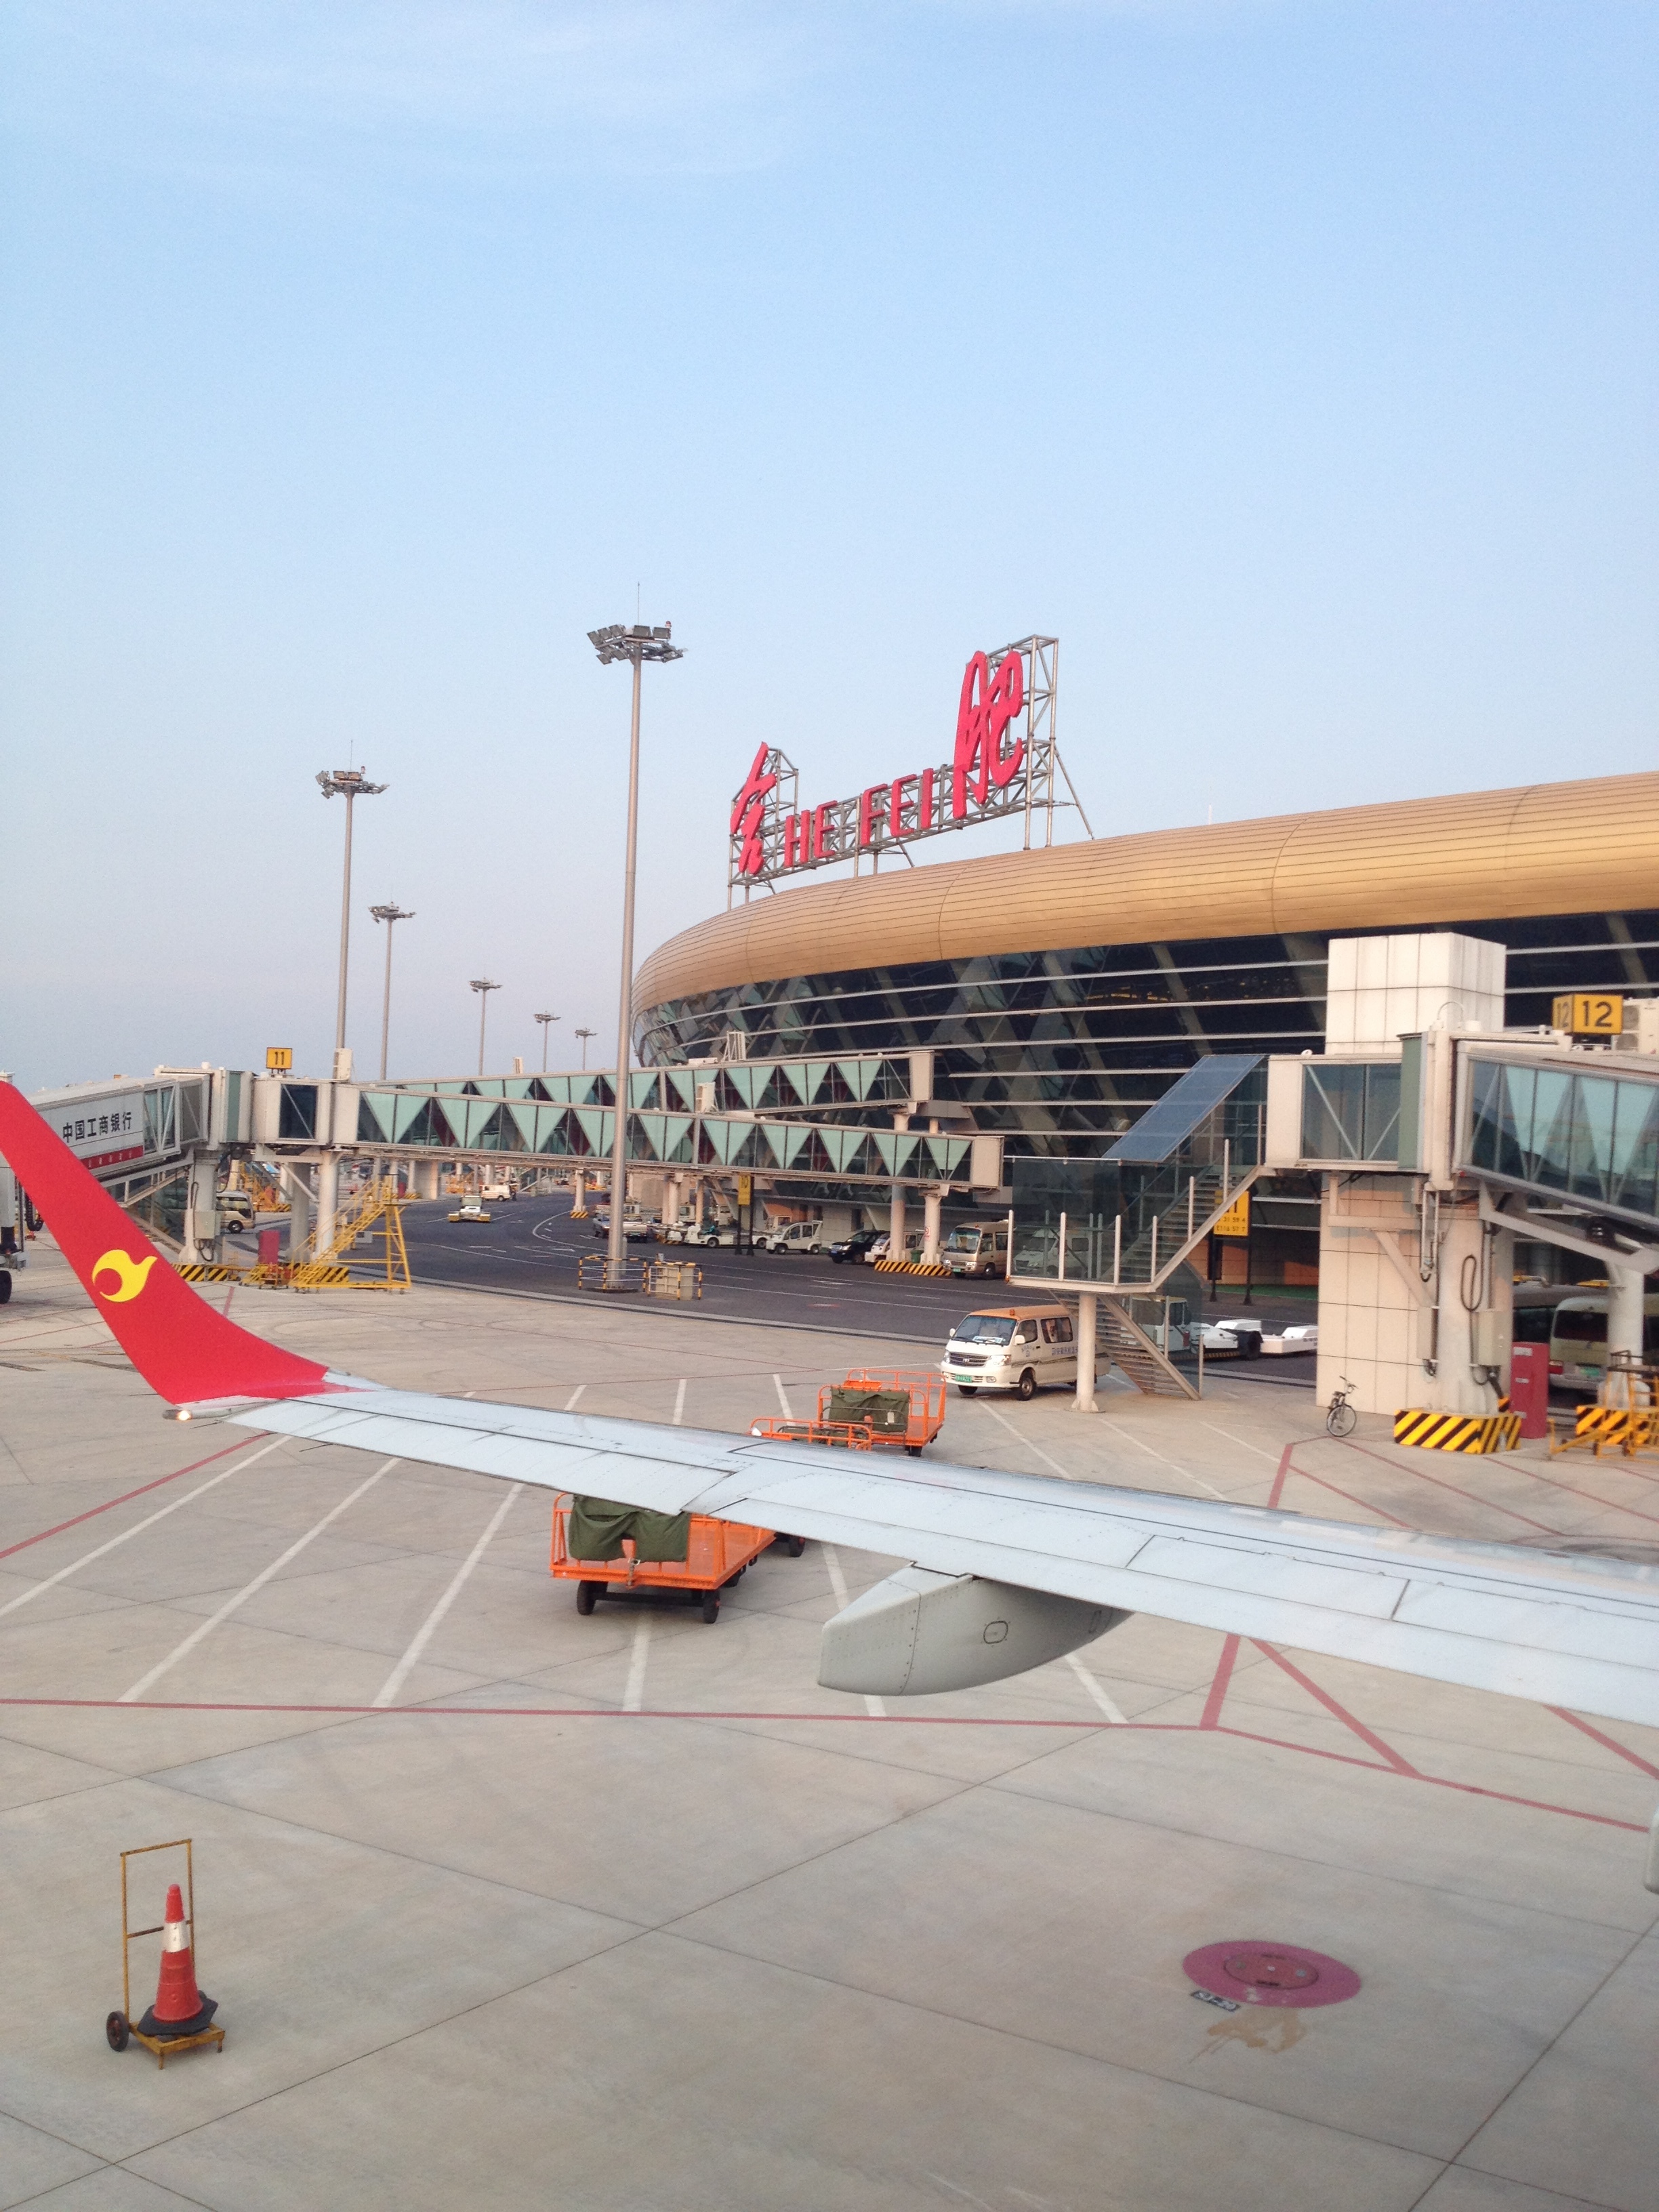 其它 正文 从8月20日起,合肥新桥国际机场作为杭州g20峰会的备降机场